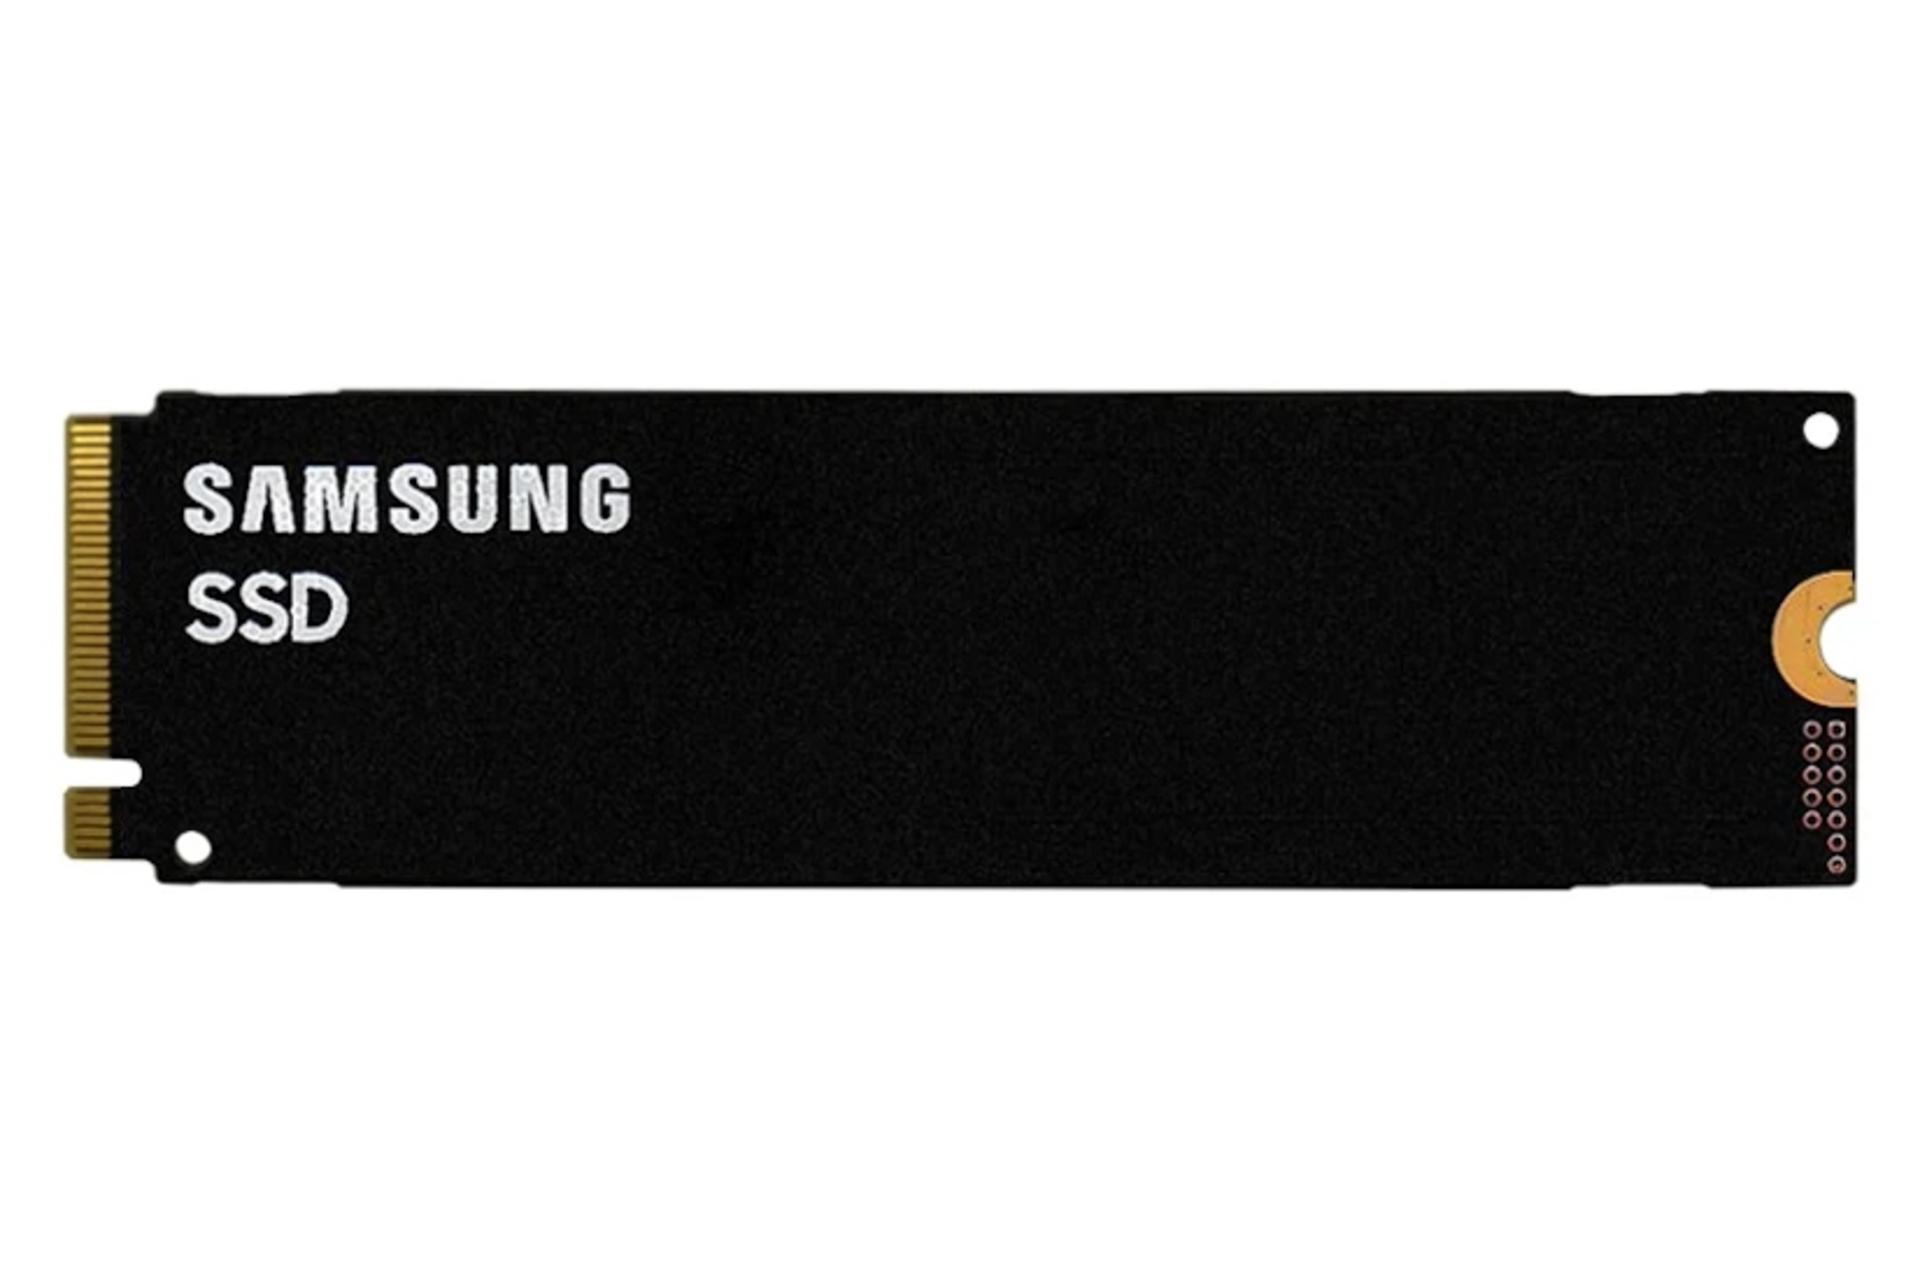 مرجع متخصصين ايران پشت SSD سامسونگ Samsung PM9A1 NVMe M.2 256GB ظرفيت 256 گيگابايت